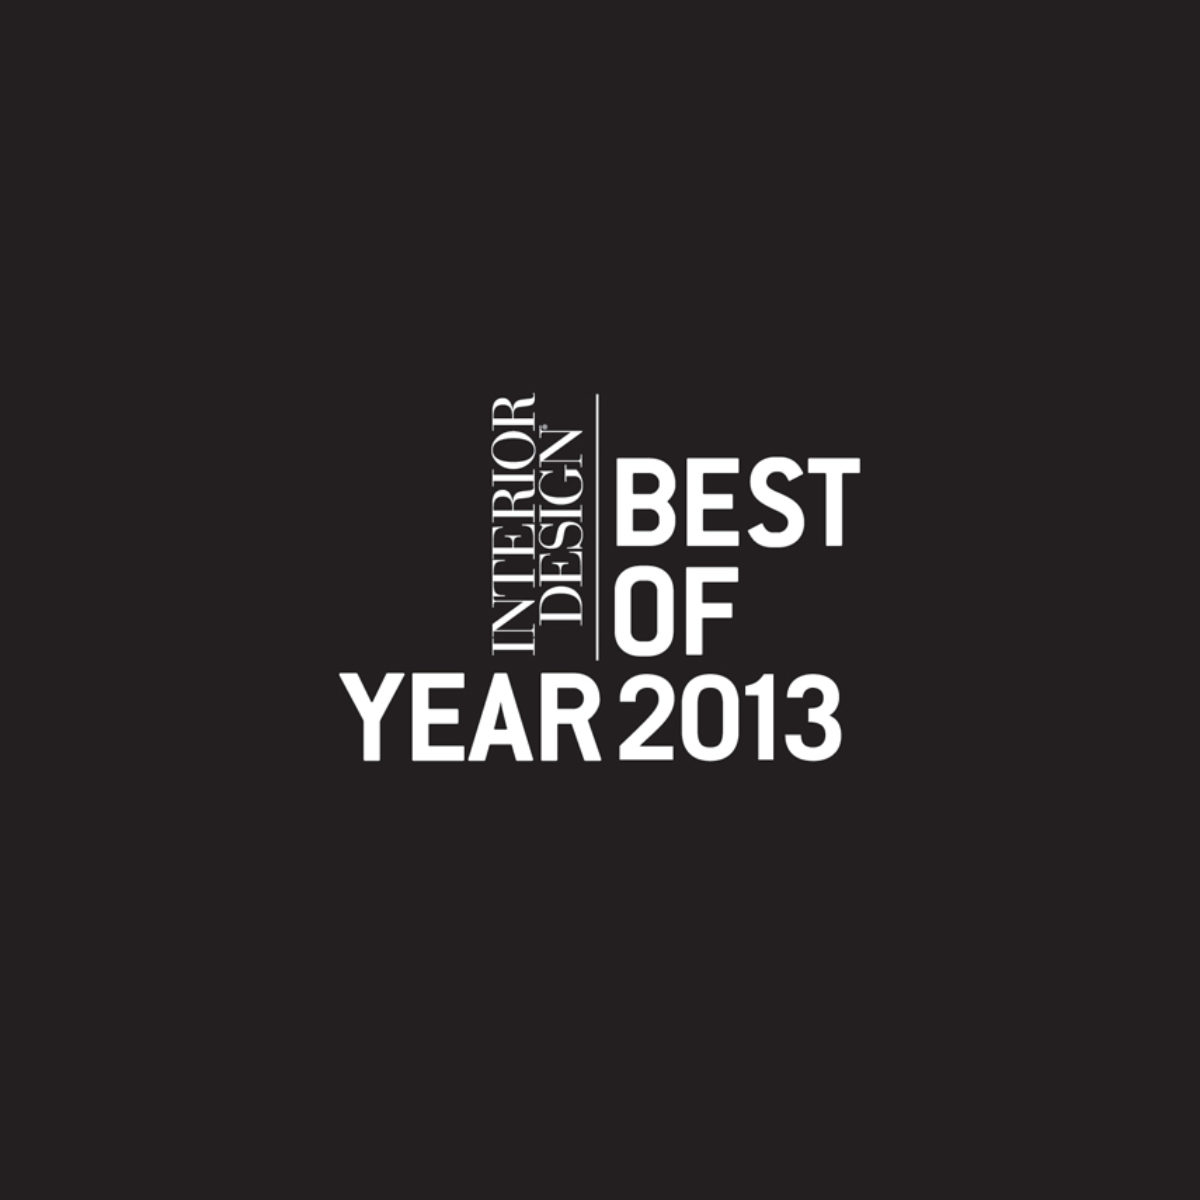 Interior Design Best of Year logo in white